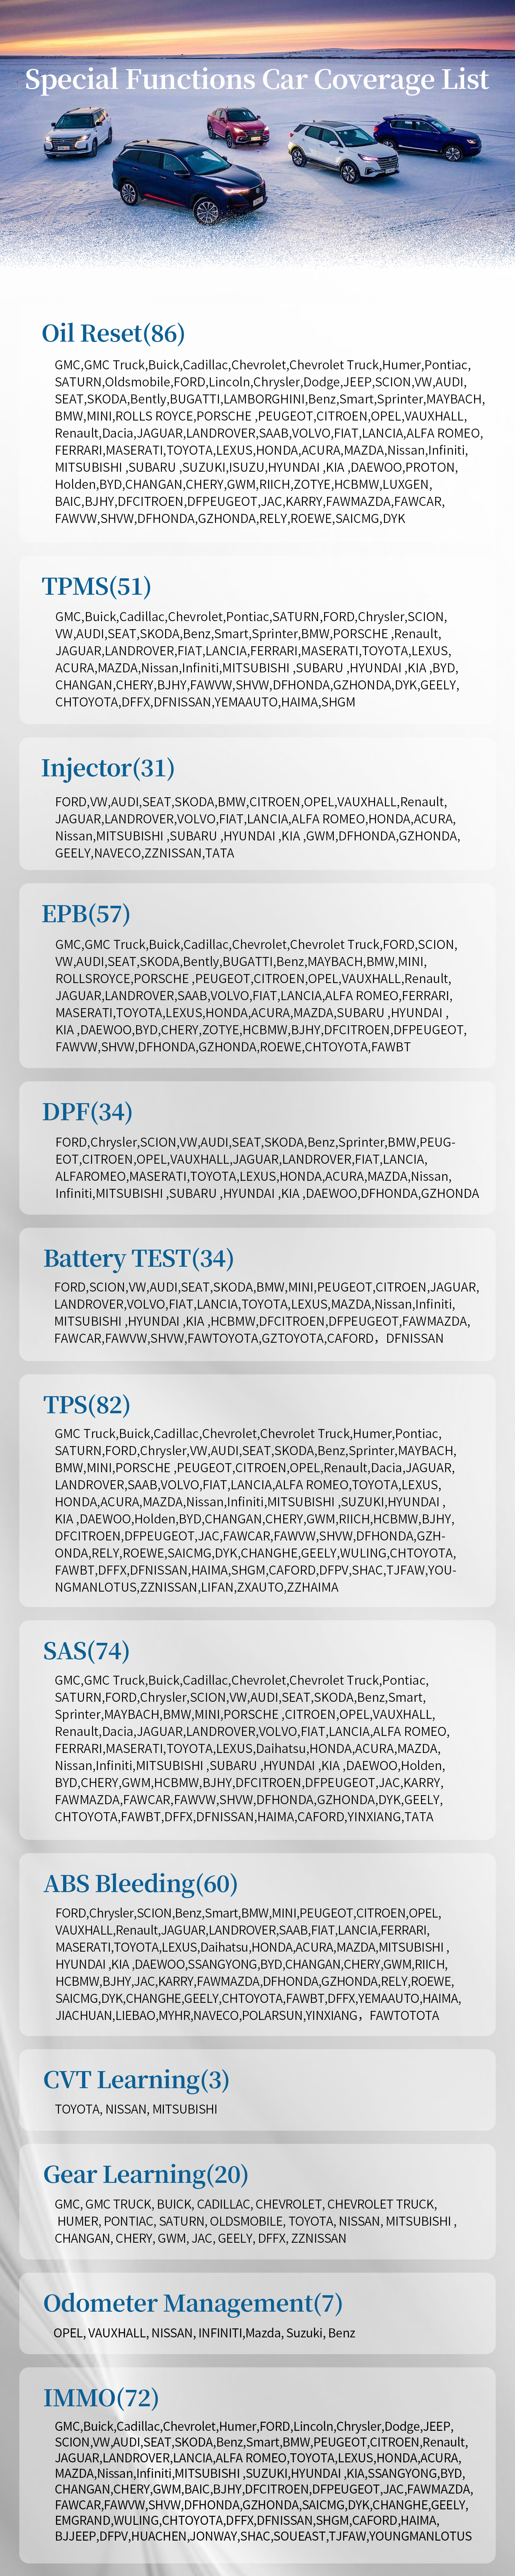 Humzor NS706 Windows Android OBD 2 Car Diagnostic Tool